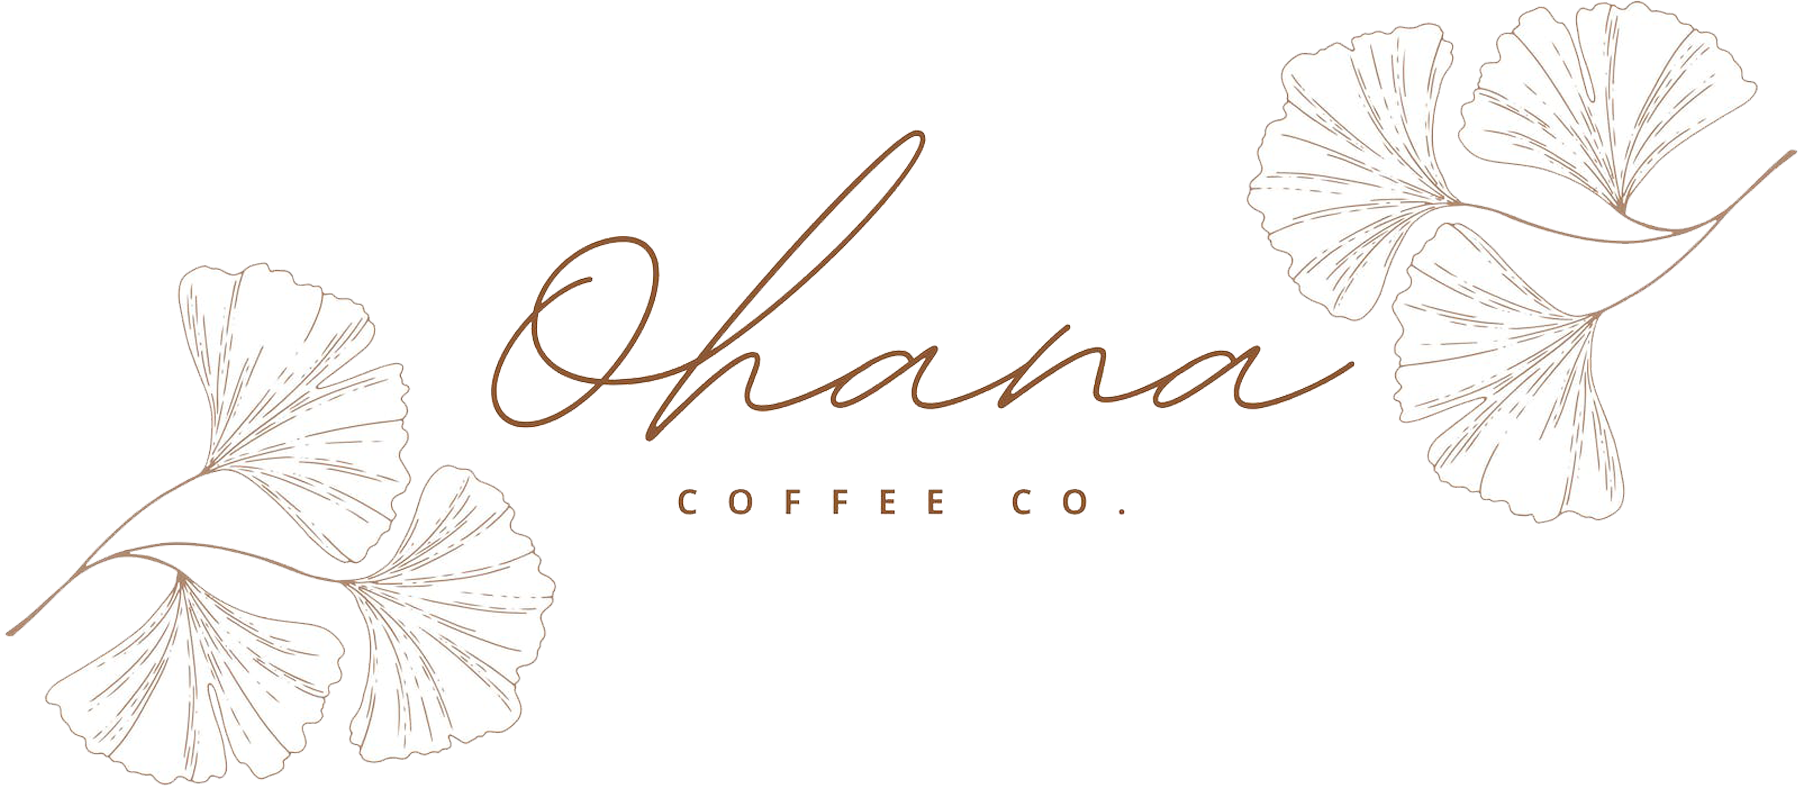 Ohana Coffee Co. Home